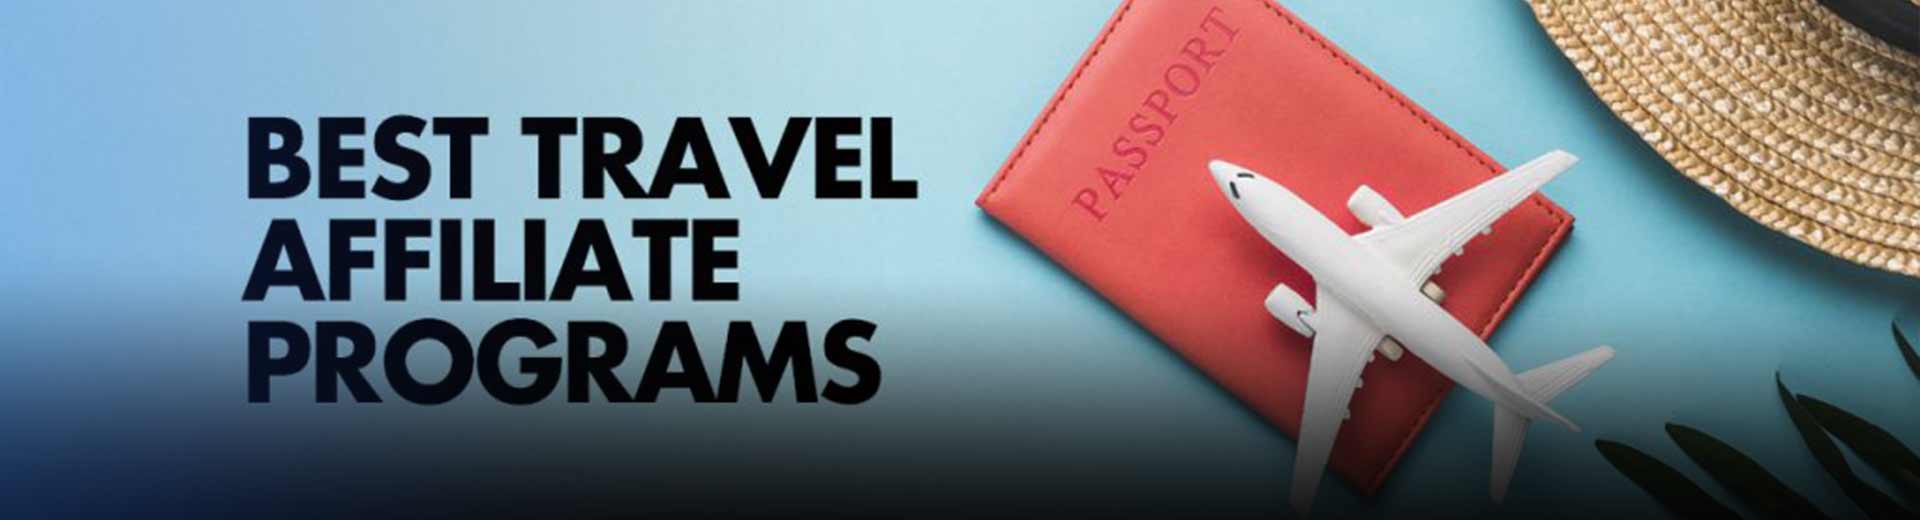 Os 20 principais programas de afiliados de viagens